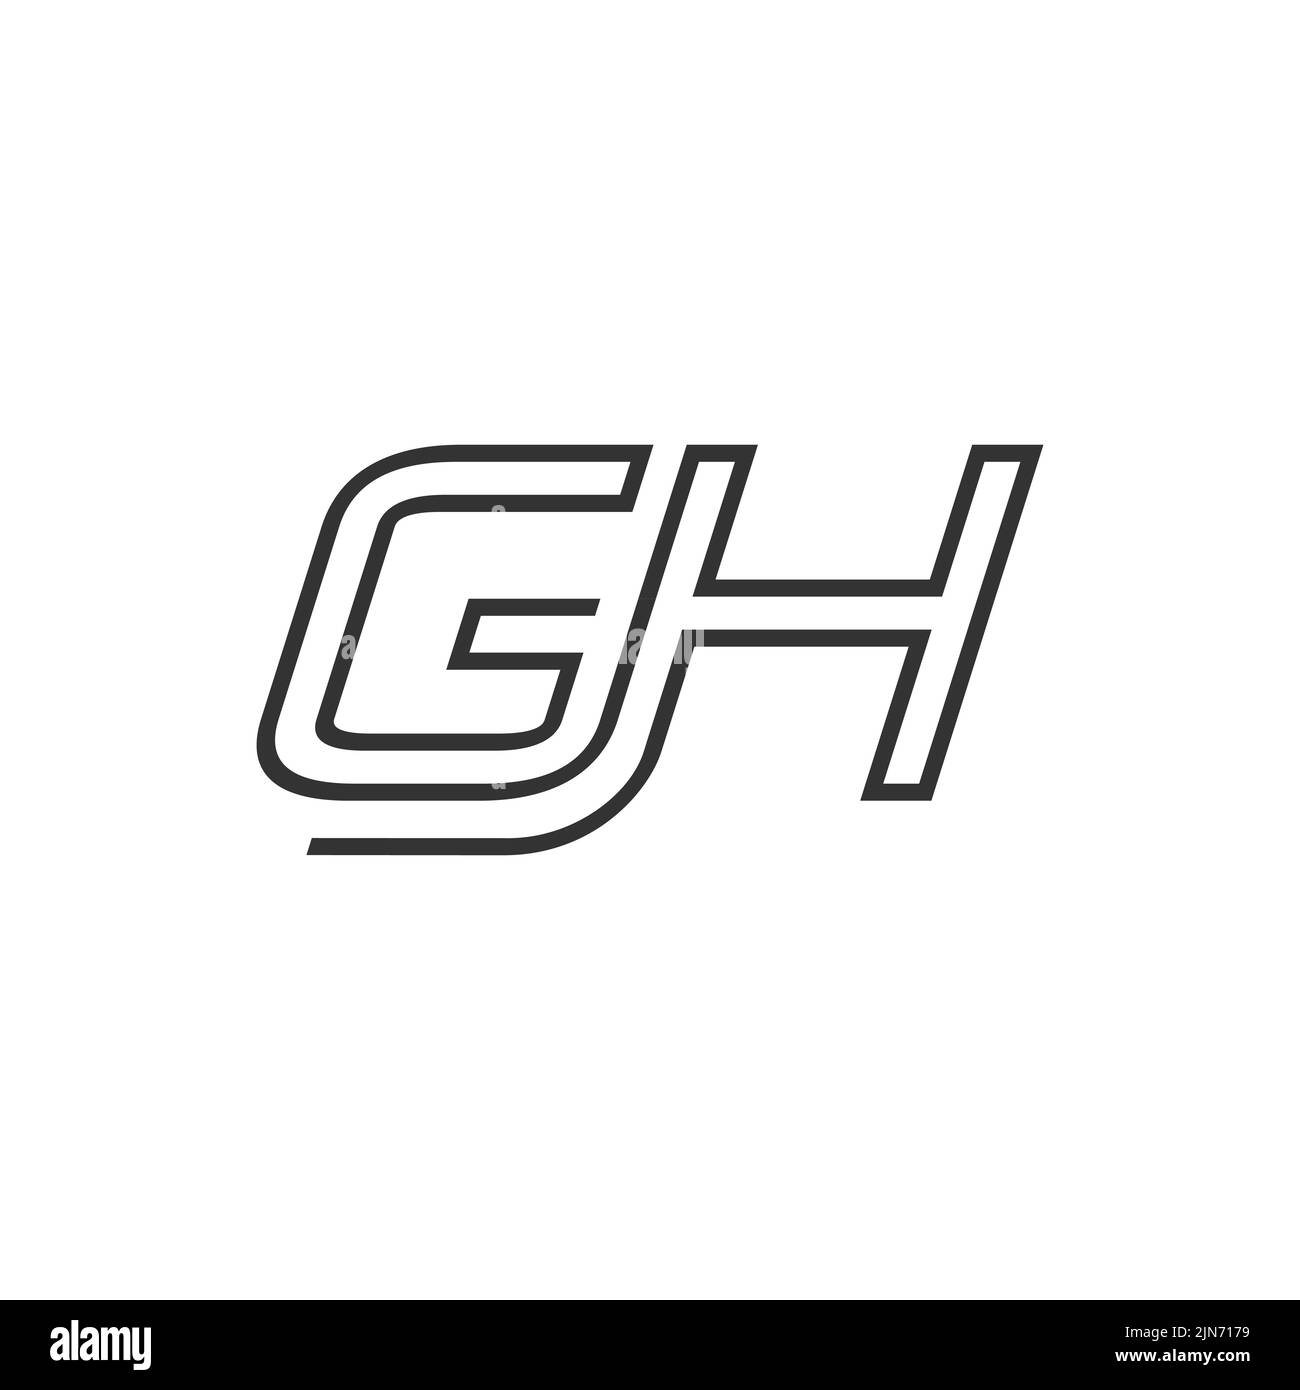 Design-Vektor mit Anfangsbuchstaben des GH-Logos. Kreatives Linienkunst-Logo mit Kombination aus Buchstaben G und H Stock Vektor